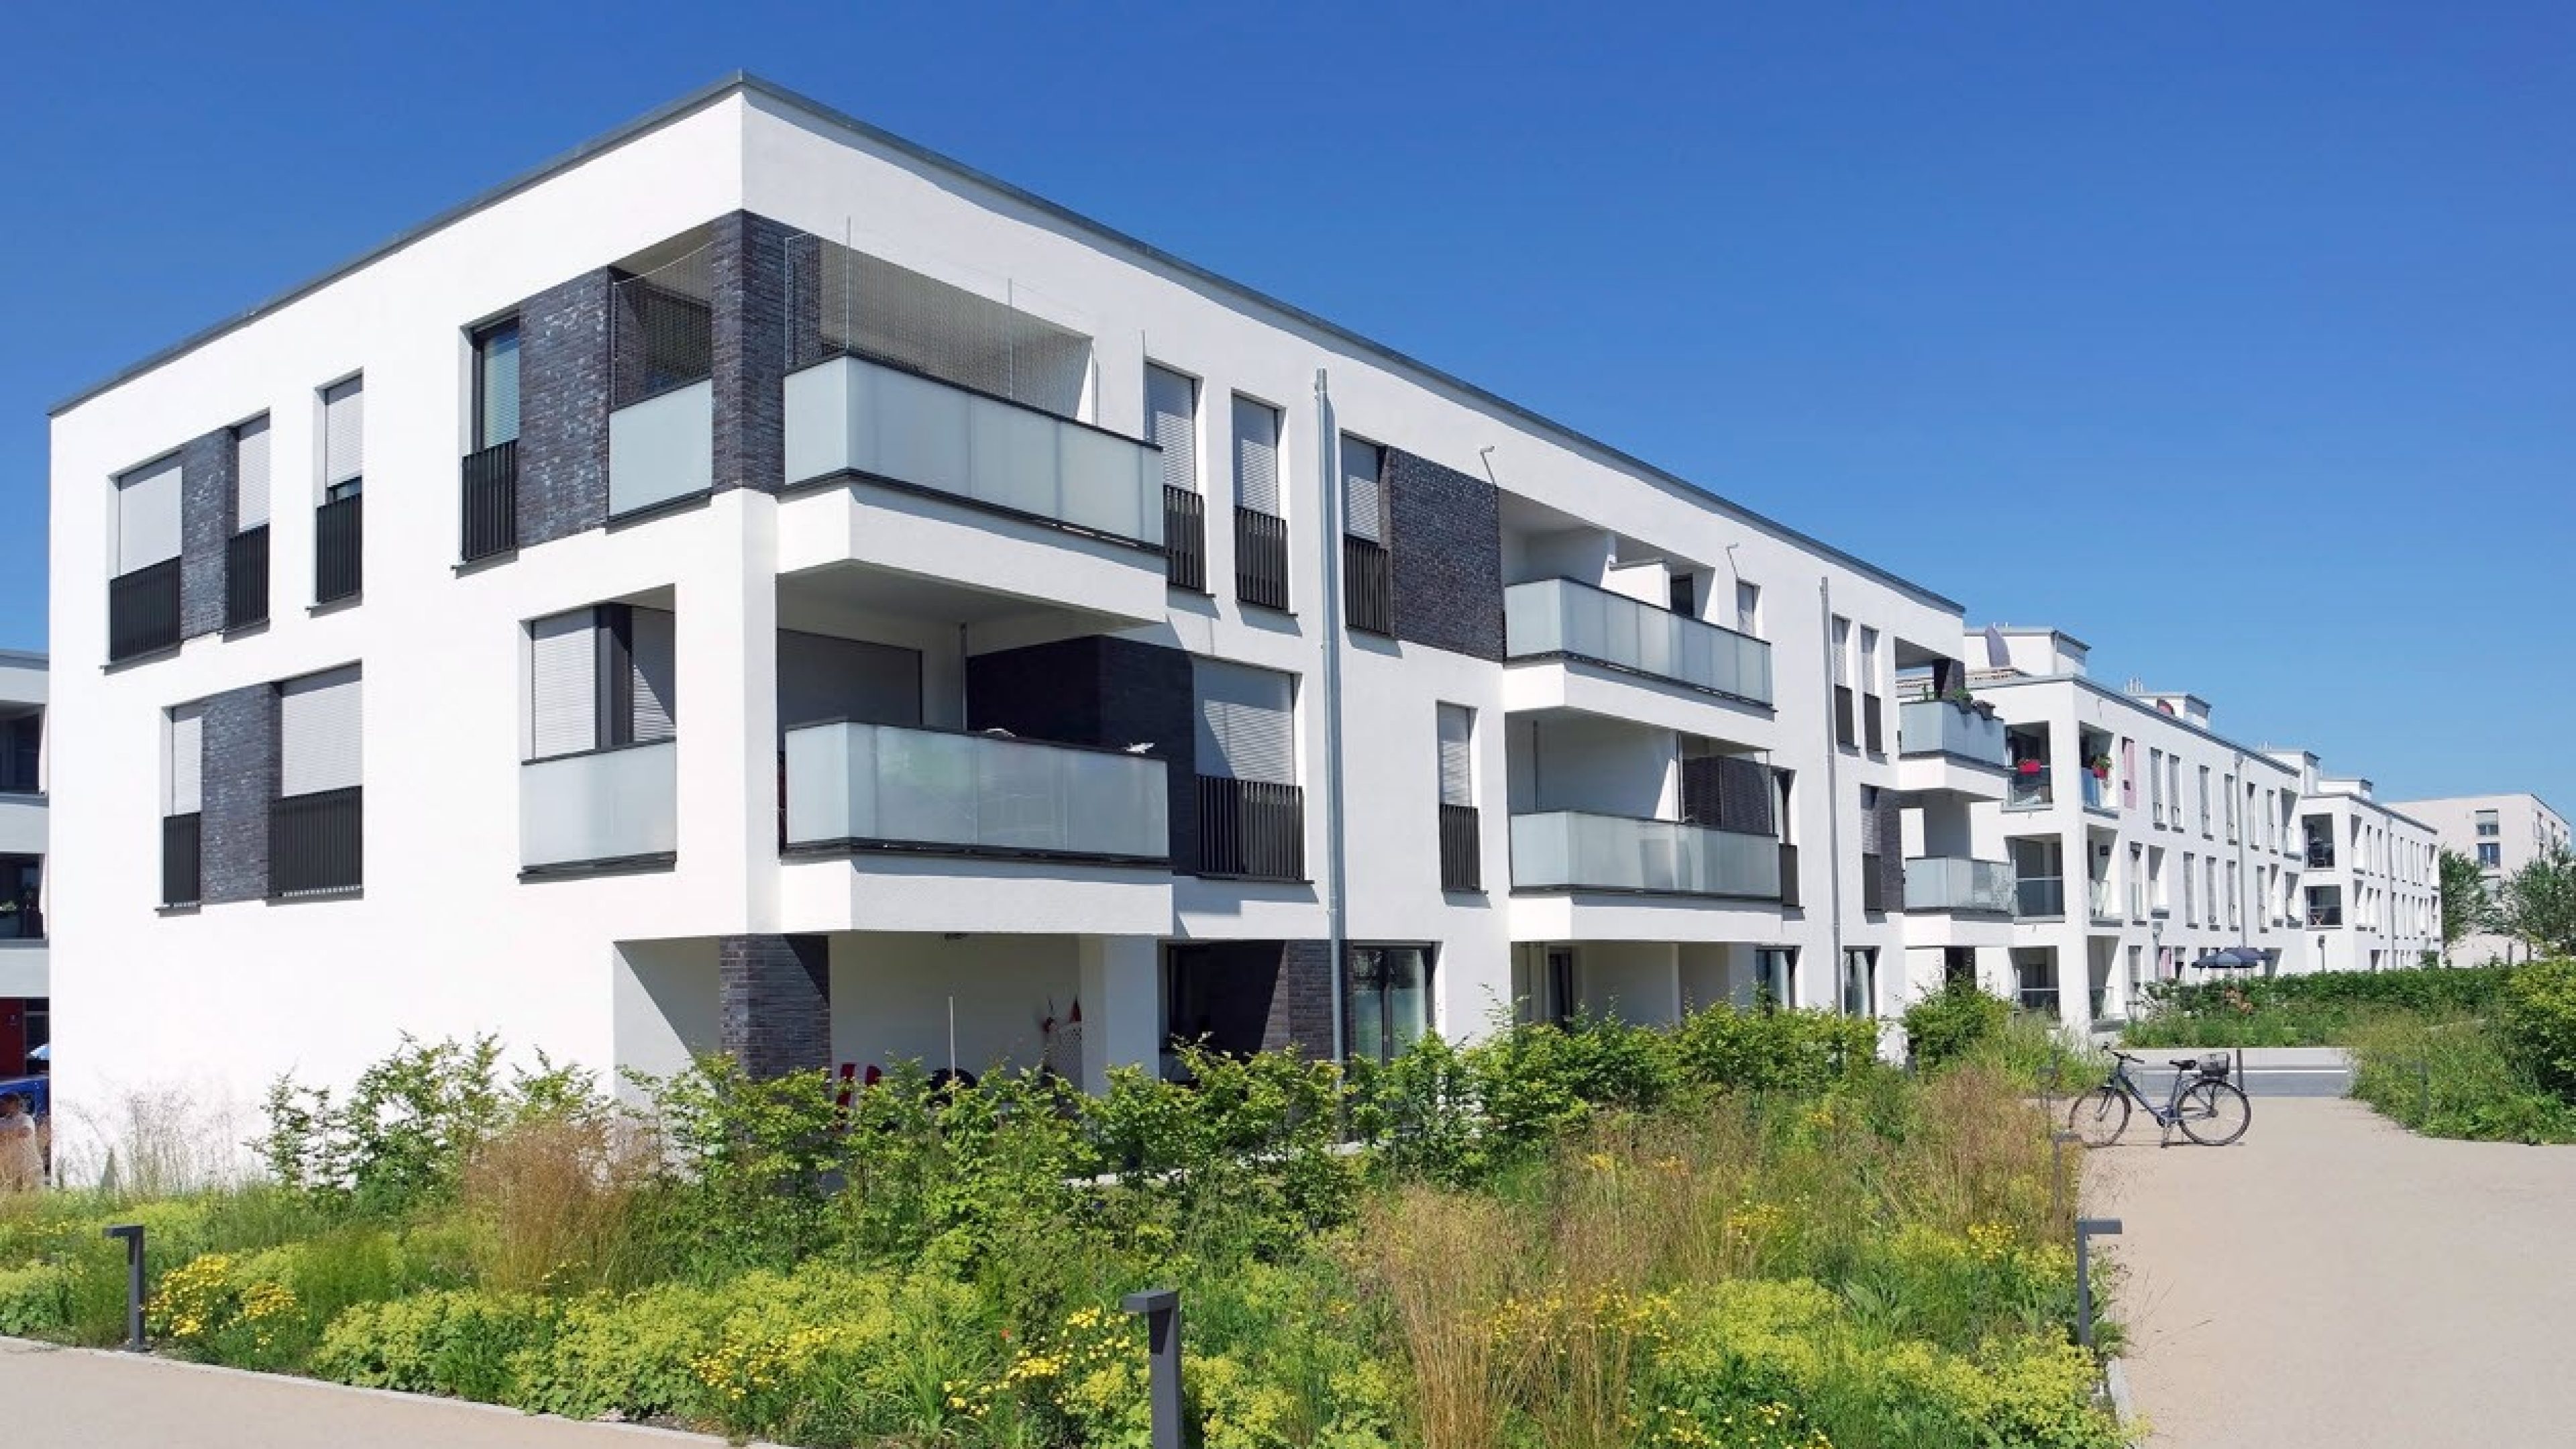 Moderne Mehrfamilienhäuser umgeben von Grünflächen und blauem Himmel.